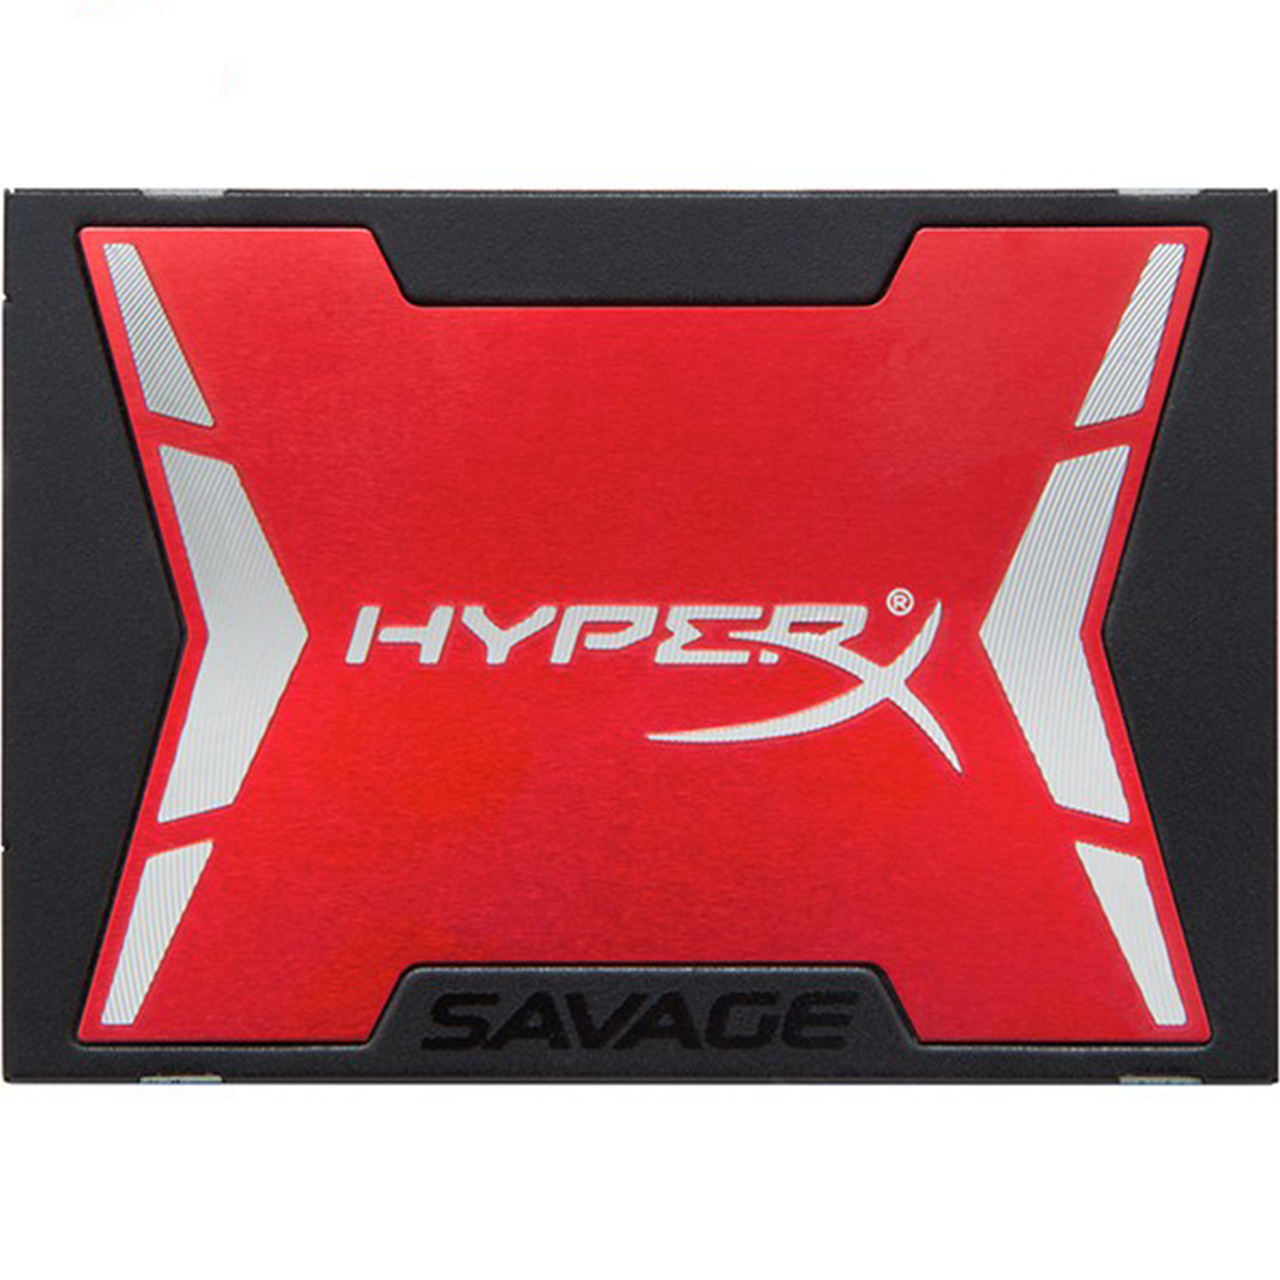 حافظه SSD کینگستون مدل HyperX Savage ظرفیت 240 گیگابایت